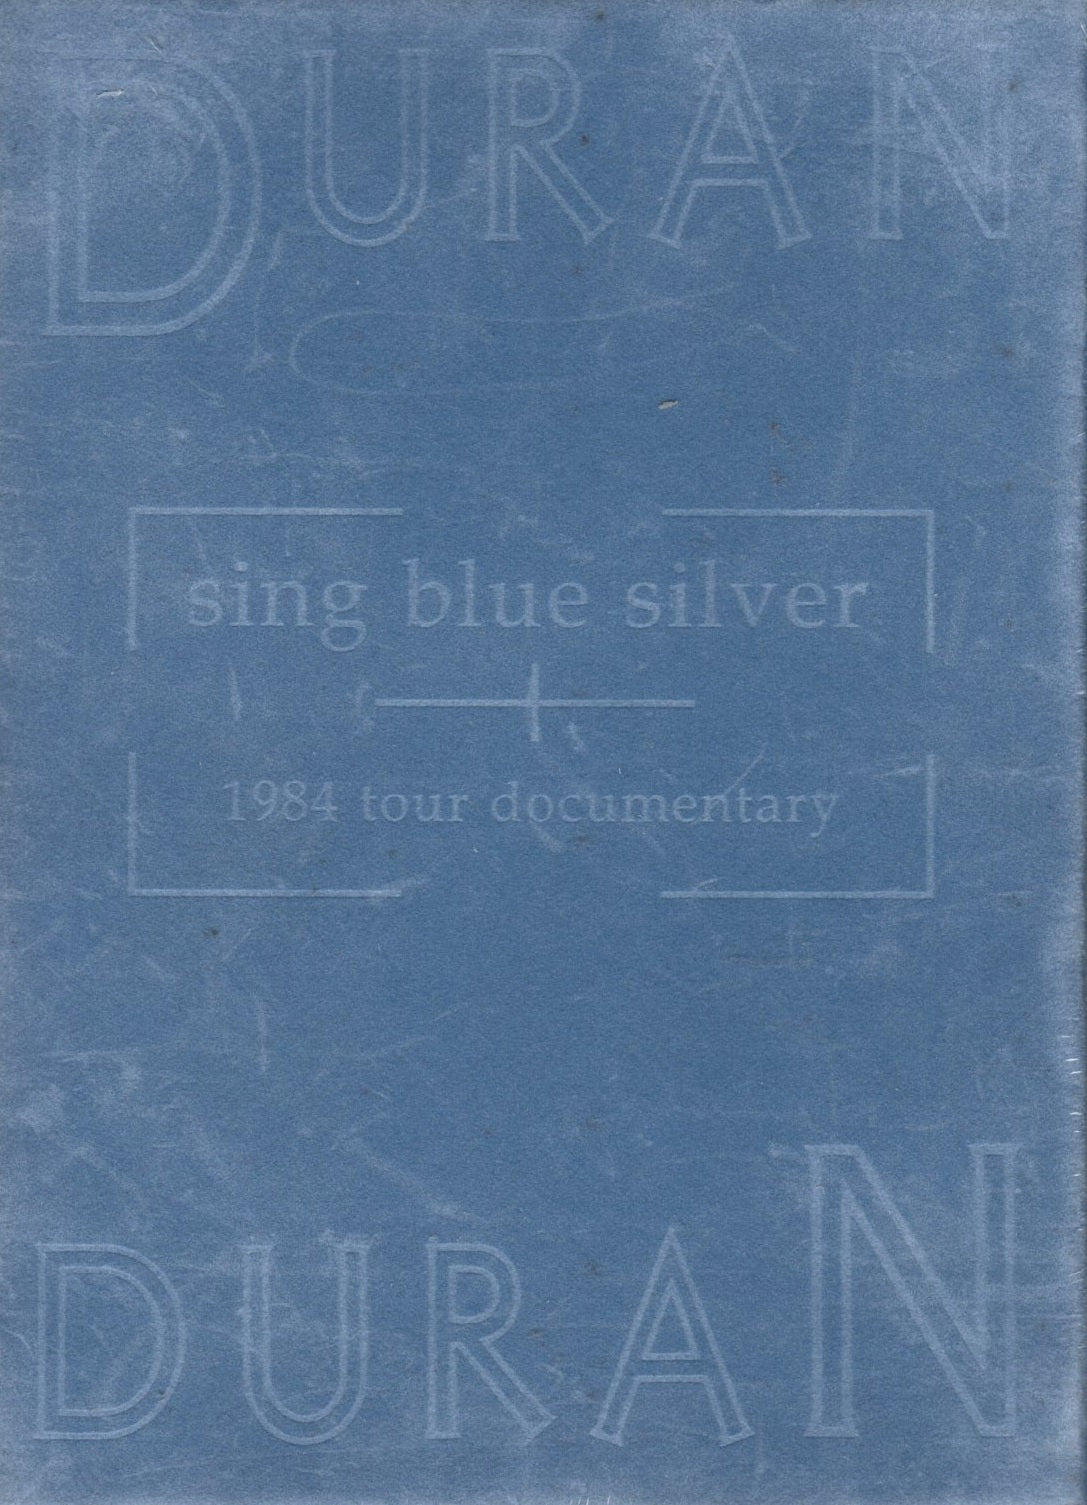 DVD Duran Duran - Sing Blue Silver